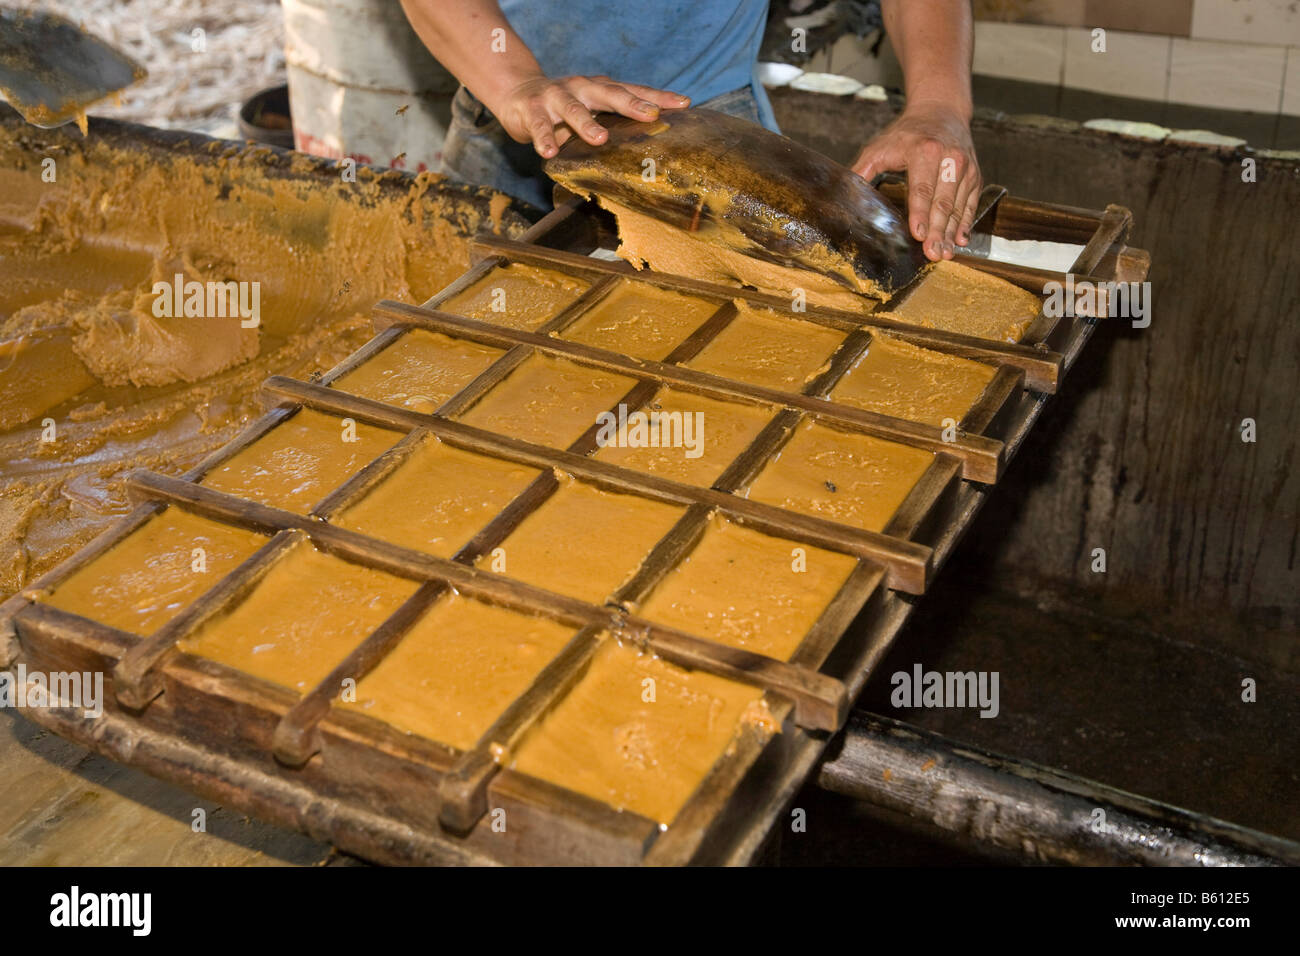 La canne à sucre, les moules étant remplie de mélasse sucre refroidi, le Venezuela, l'Amérique du Sud Banque D'Images